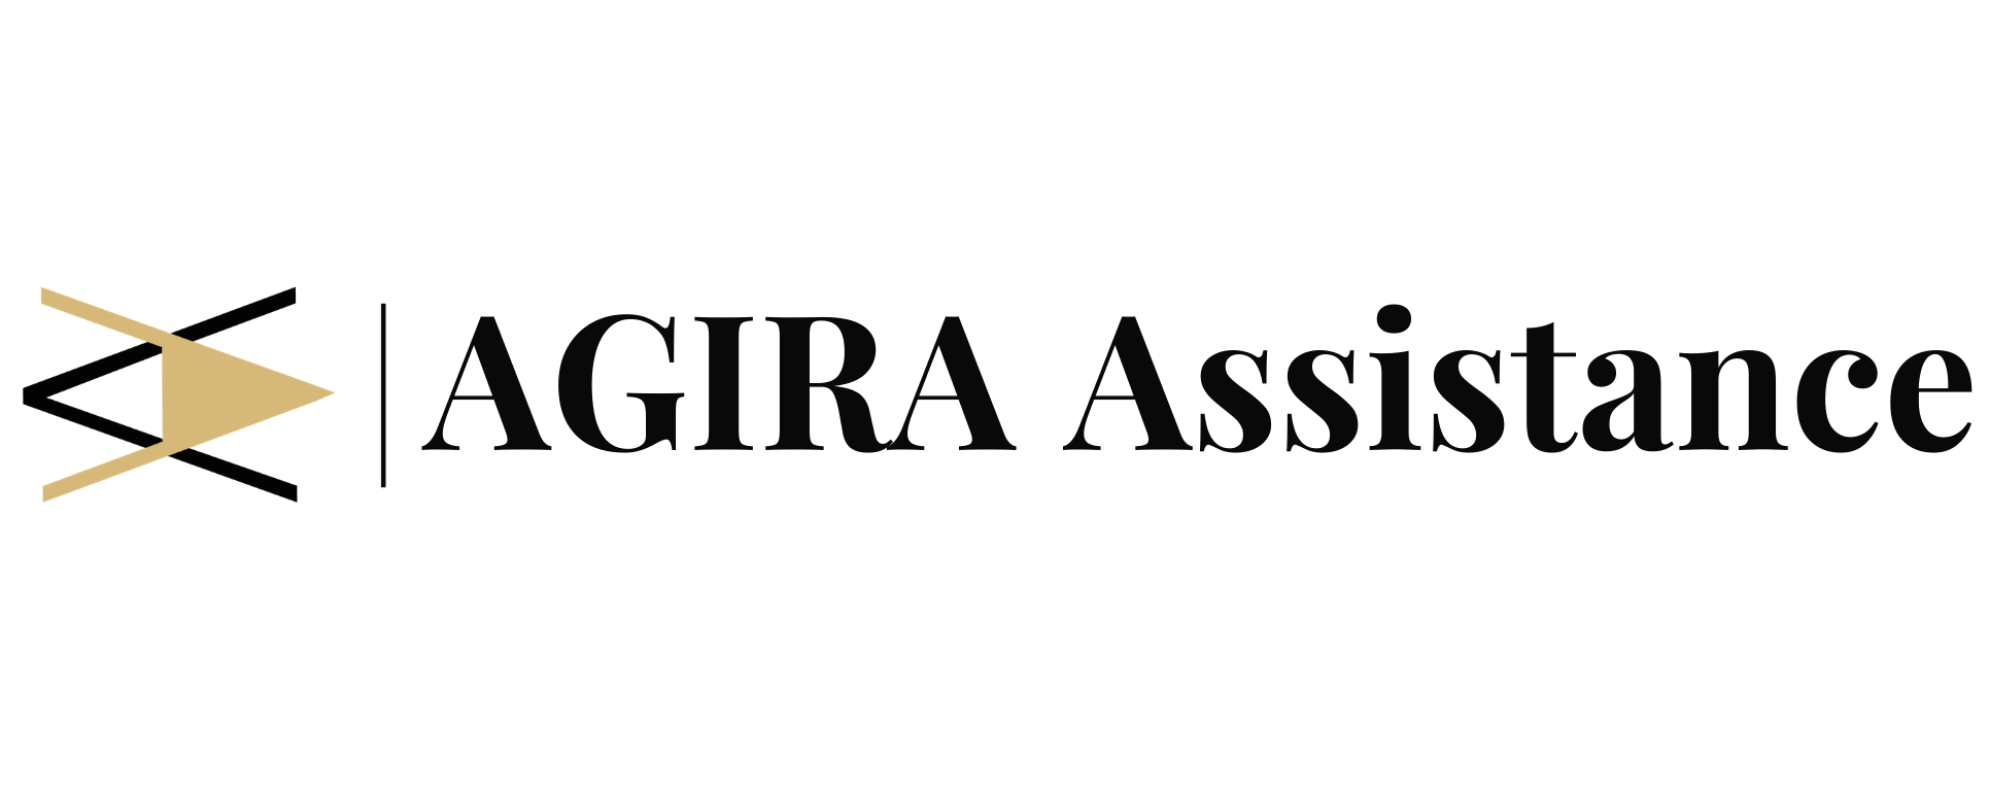 Agira-Assistance